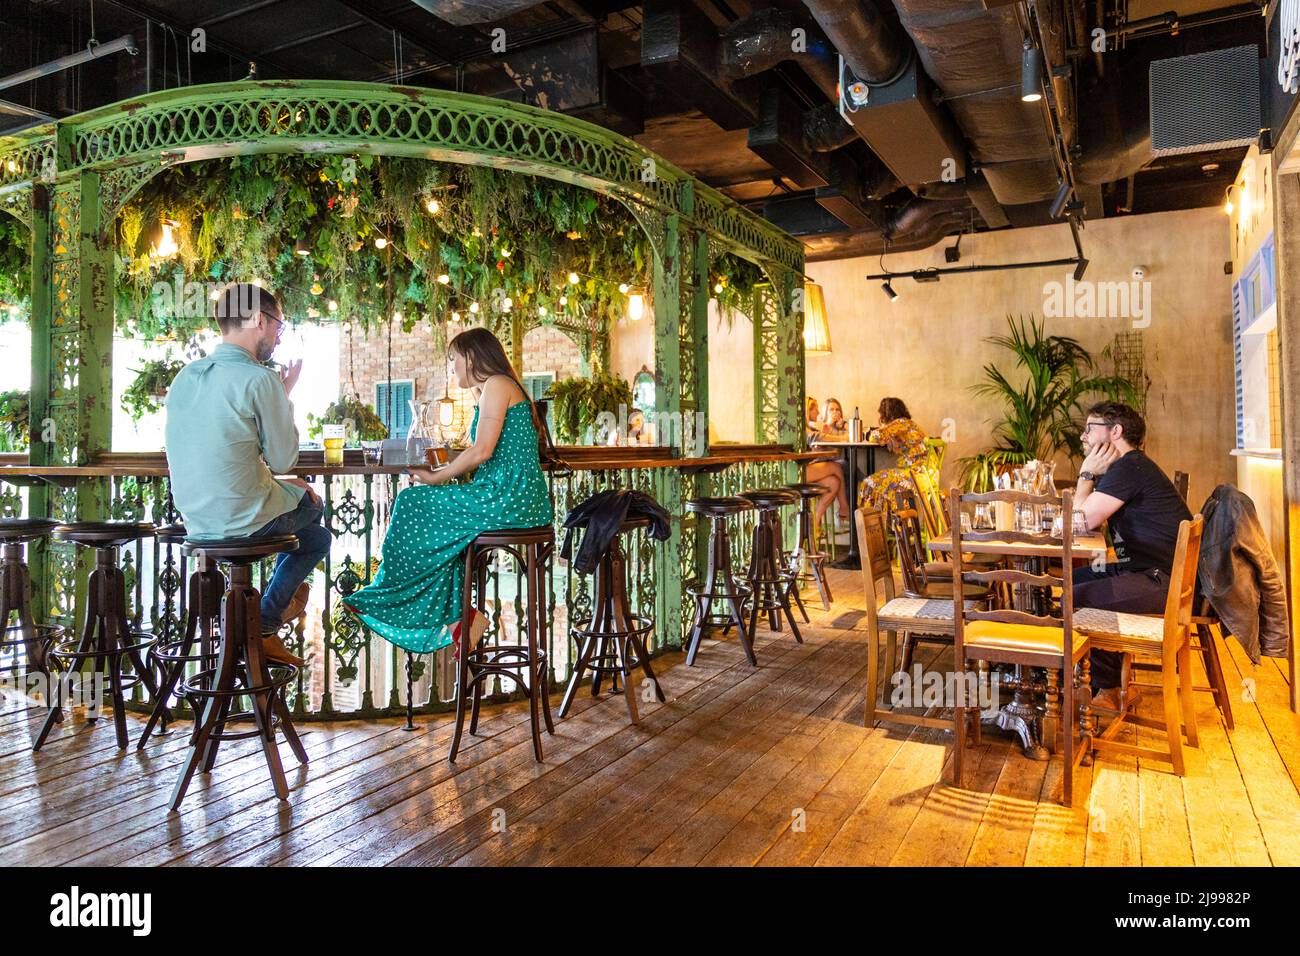 Interior of Goods Way Courtyard - una sala ristorazione in stile New Orleans e un locale di musica dal vivo a King's Cross, Londra, Regno Unito Foto Stock